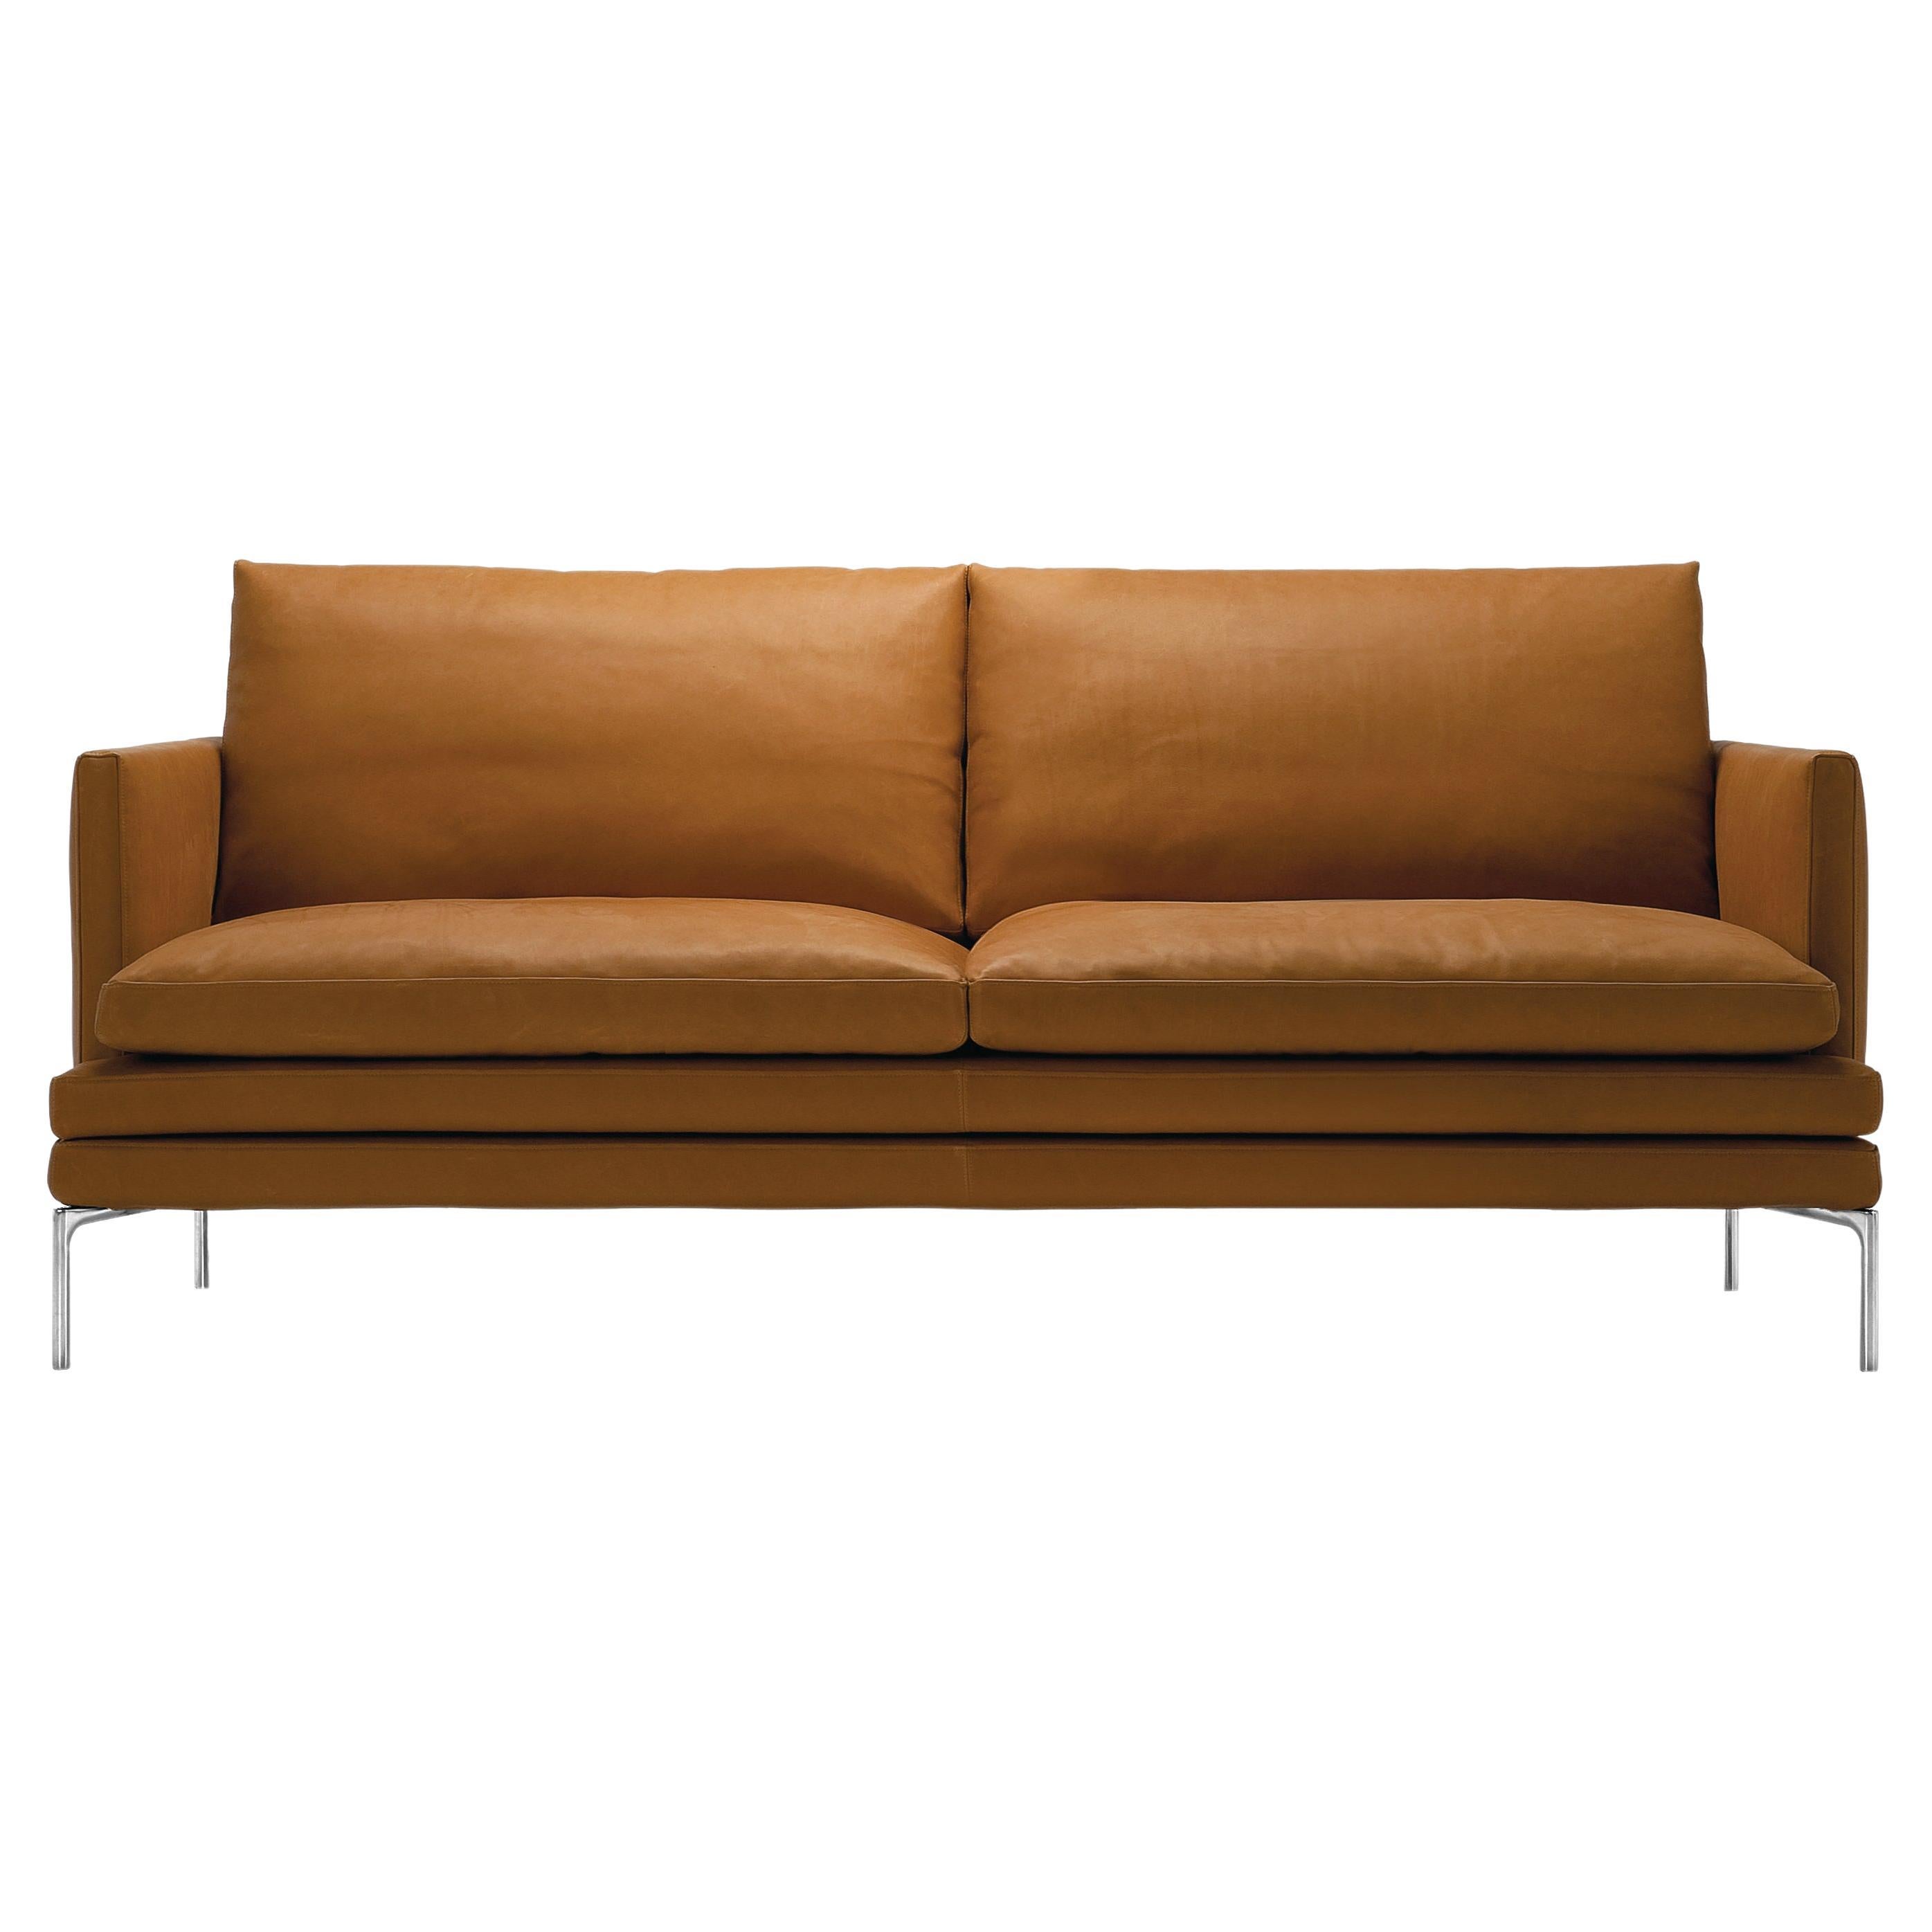 Zanotta William Monobloc Small Sofa in Brown Leather by Damian Williamson For Sale